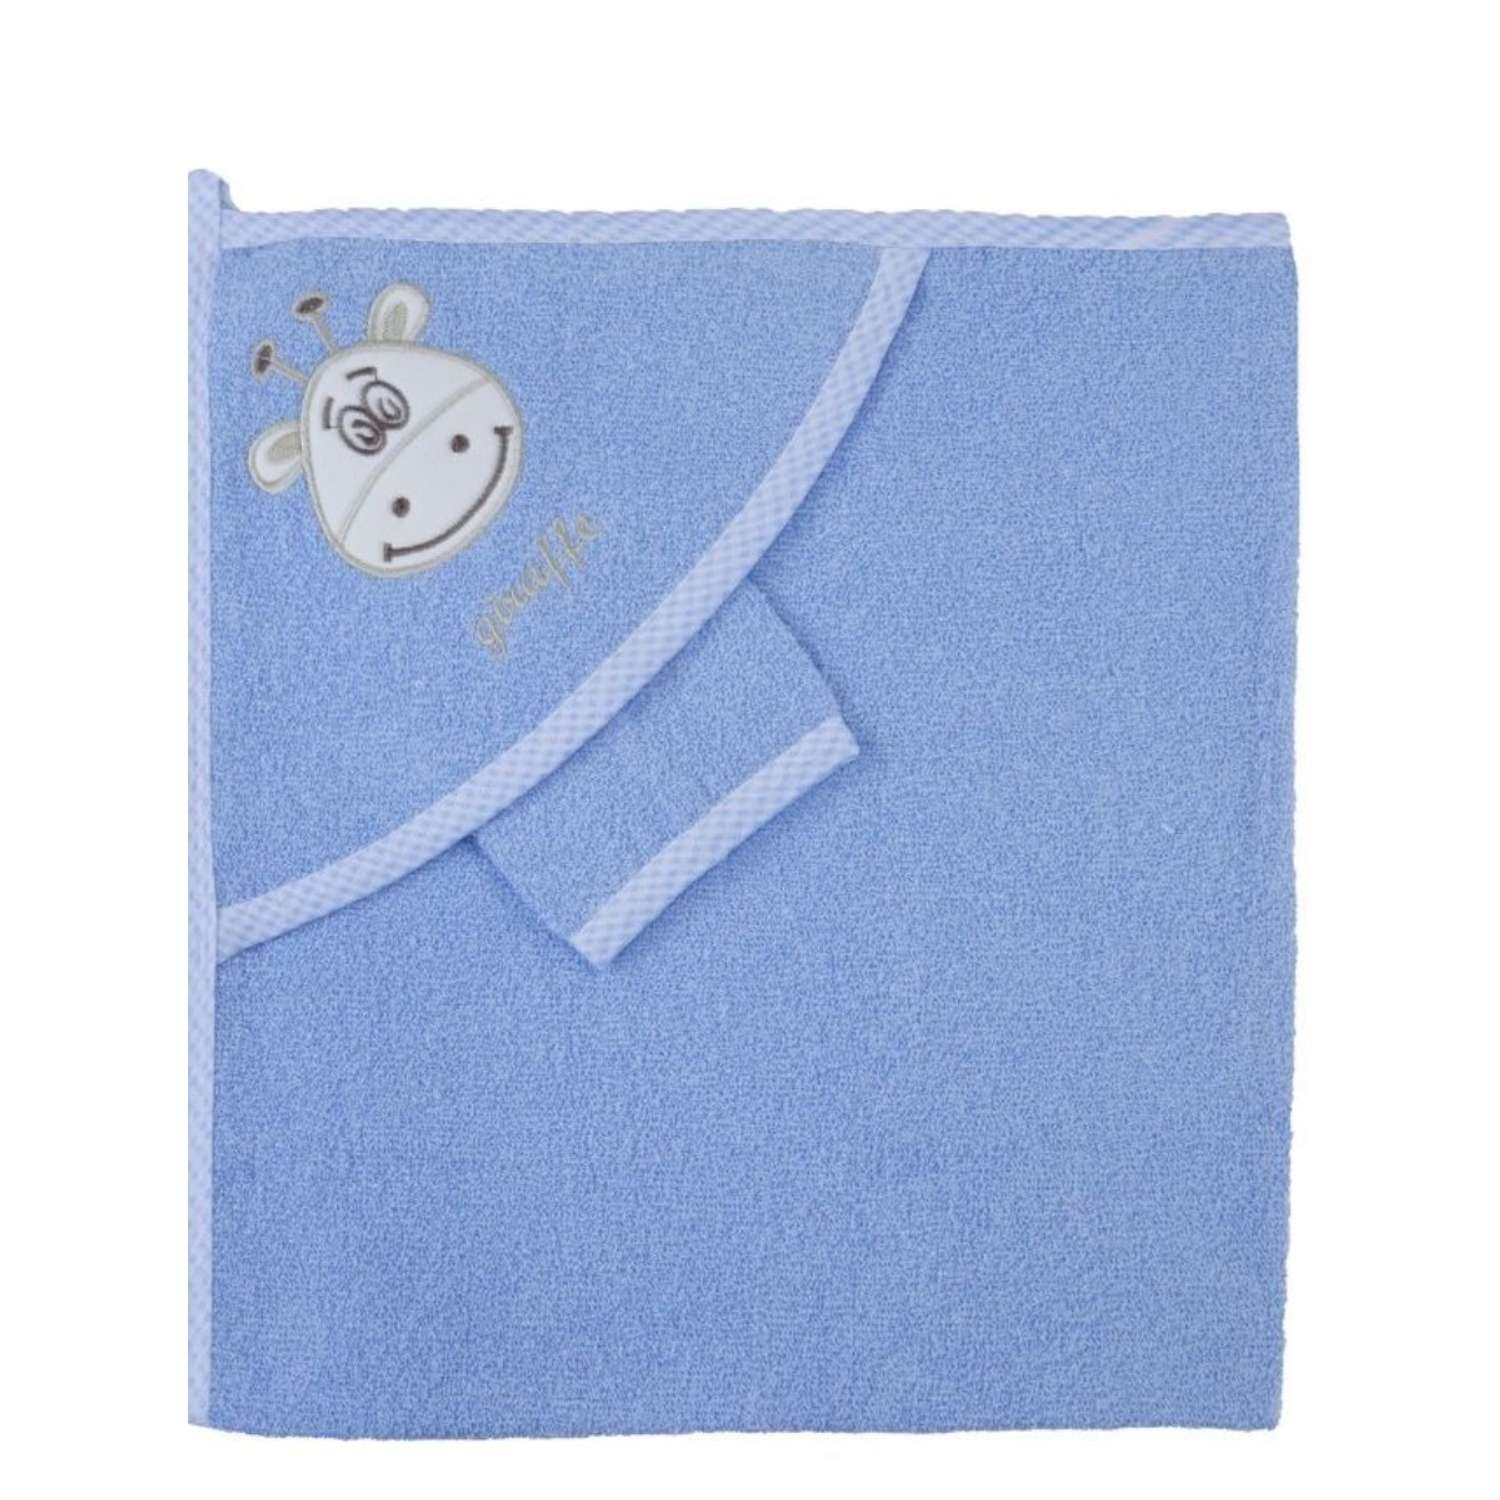 Набор для купания малыша M-BABY махровое полотенце с уголком и рукавичка 100% хлопок - фото 1